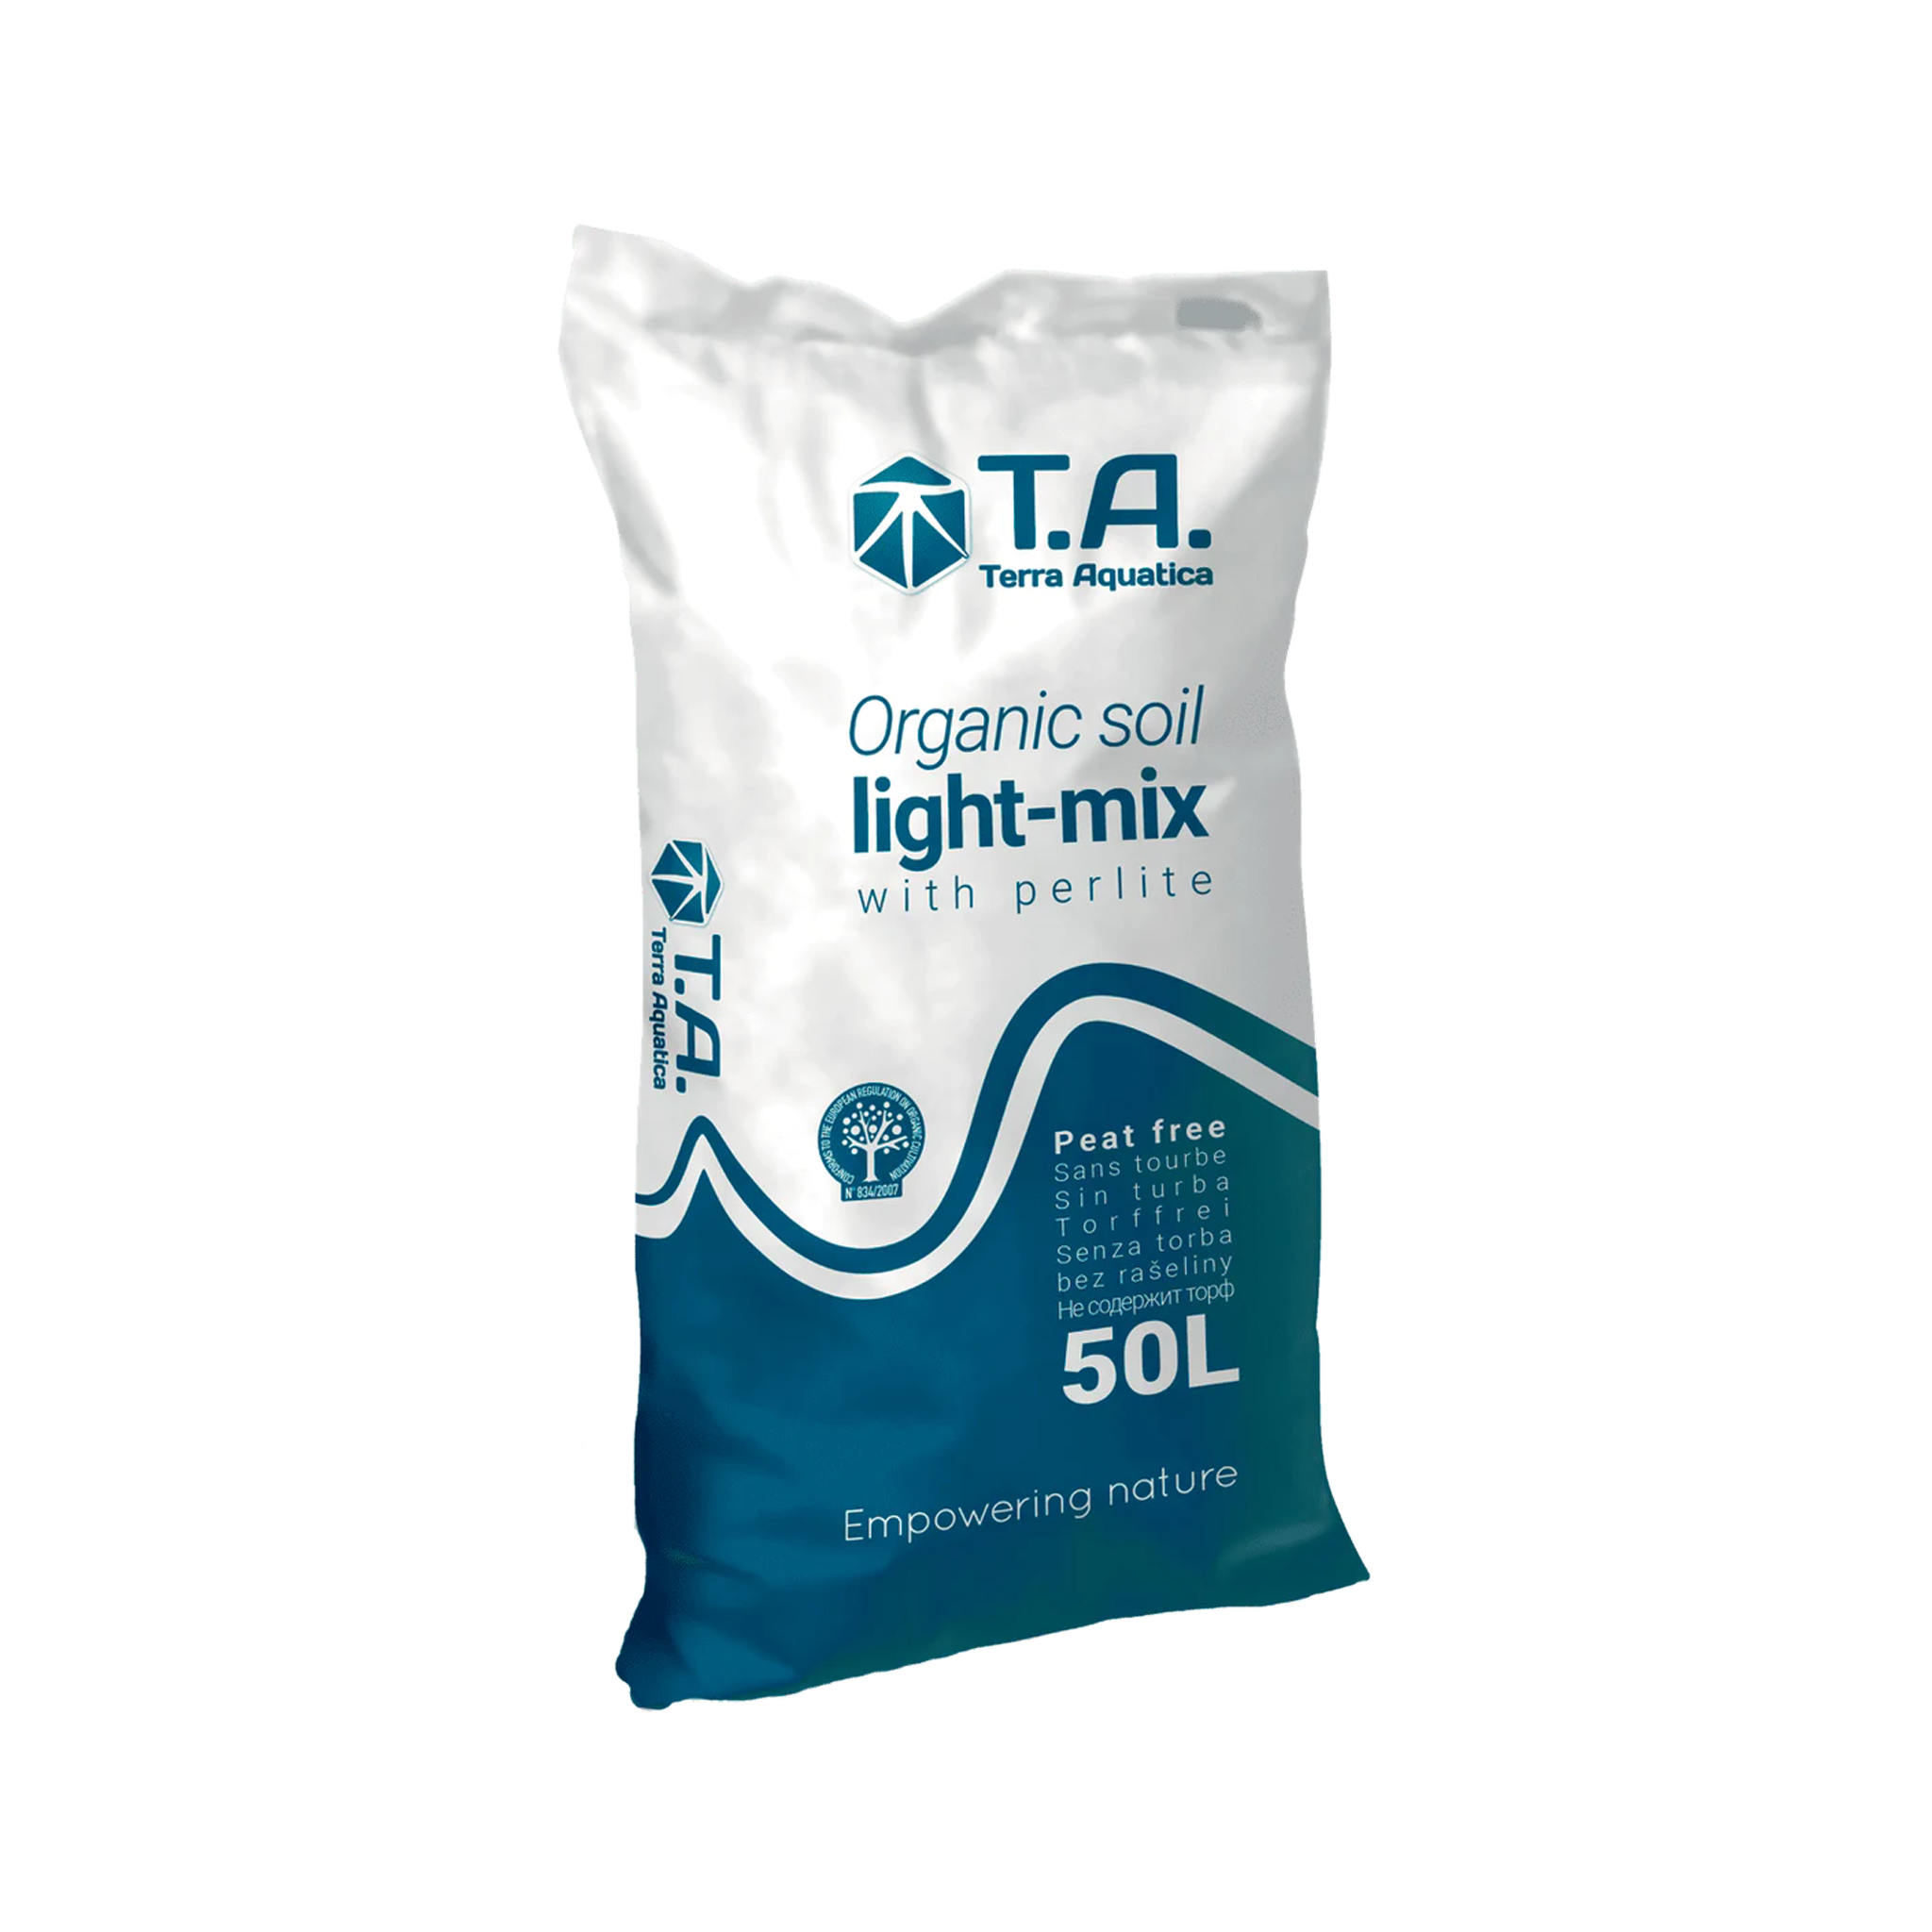 T.A Organic soil light-mix - ორგანული ნიადაგის ნაზავი